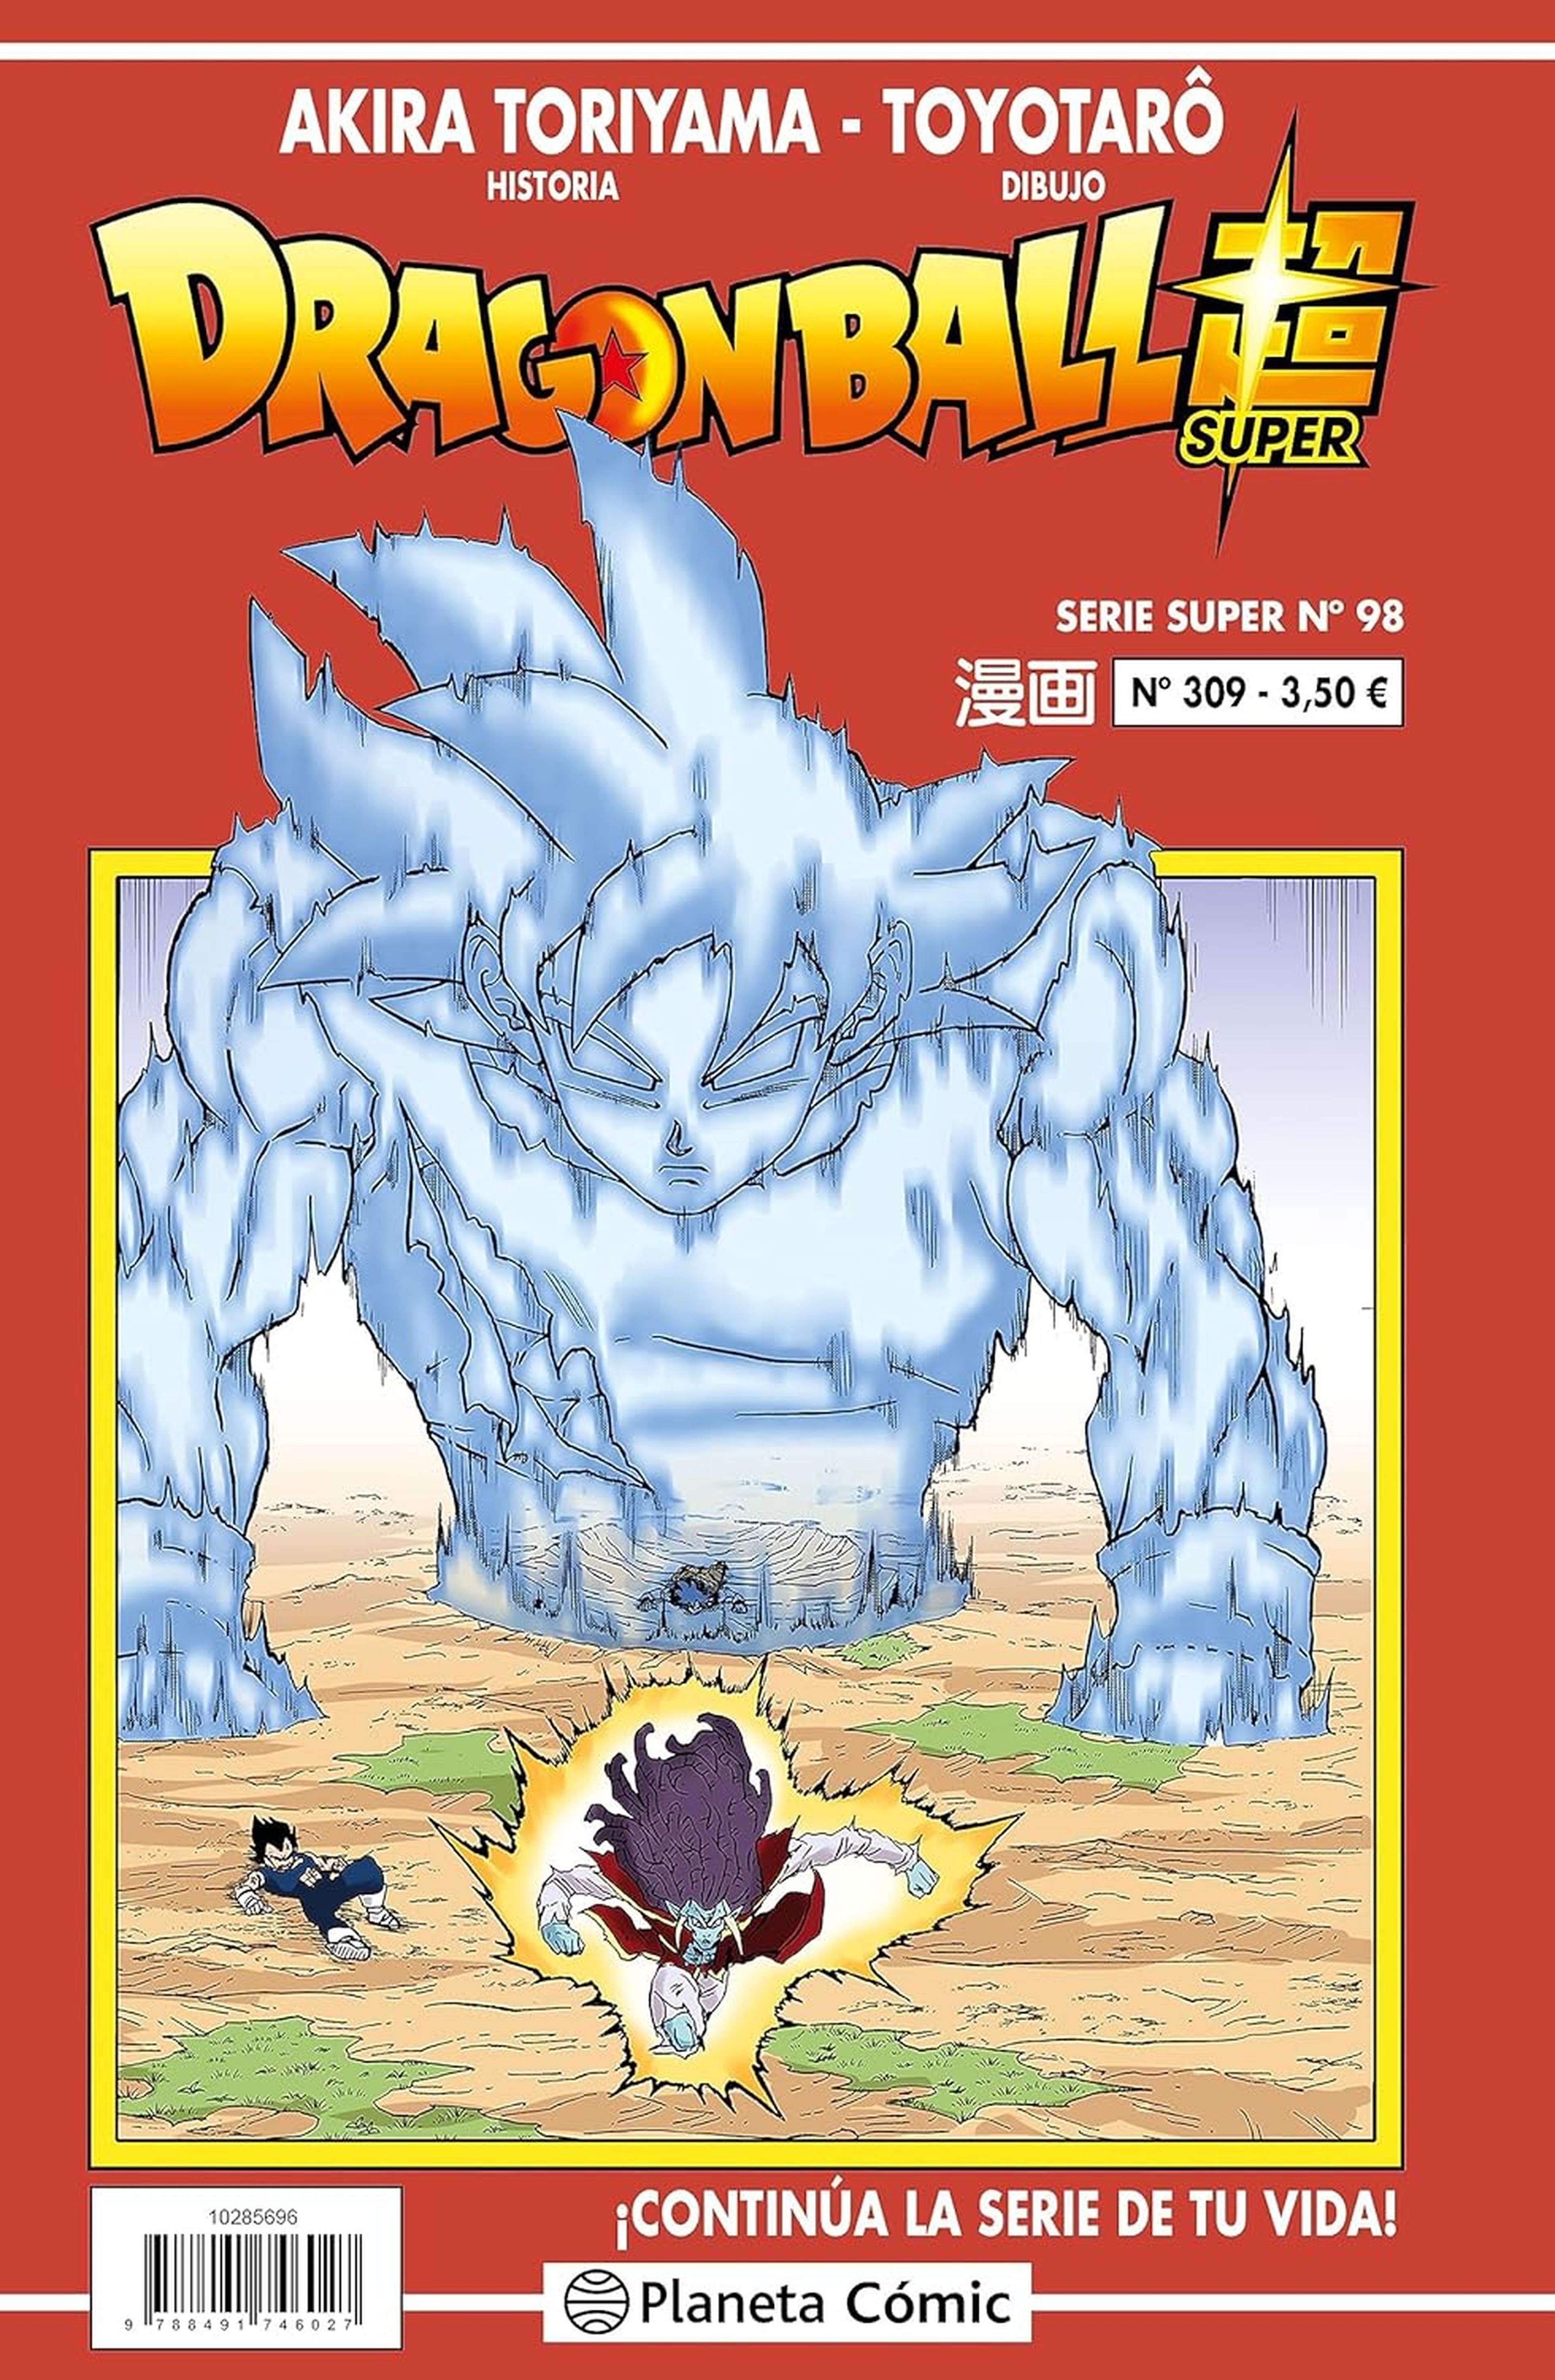 Dragon Ball Super, manga 98 [ESTRENO]: dónde leer el nuevo